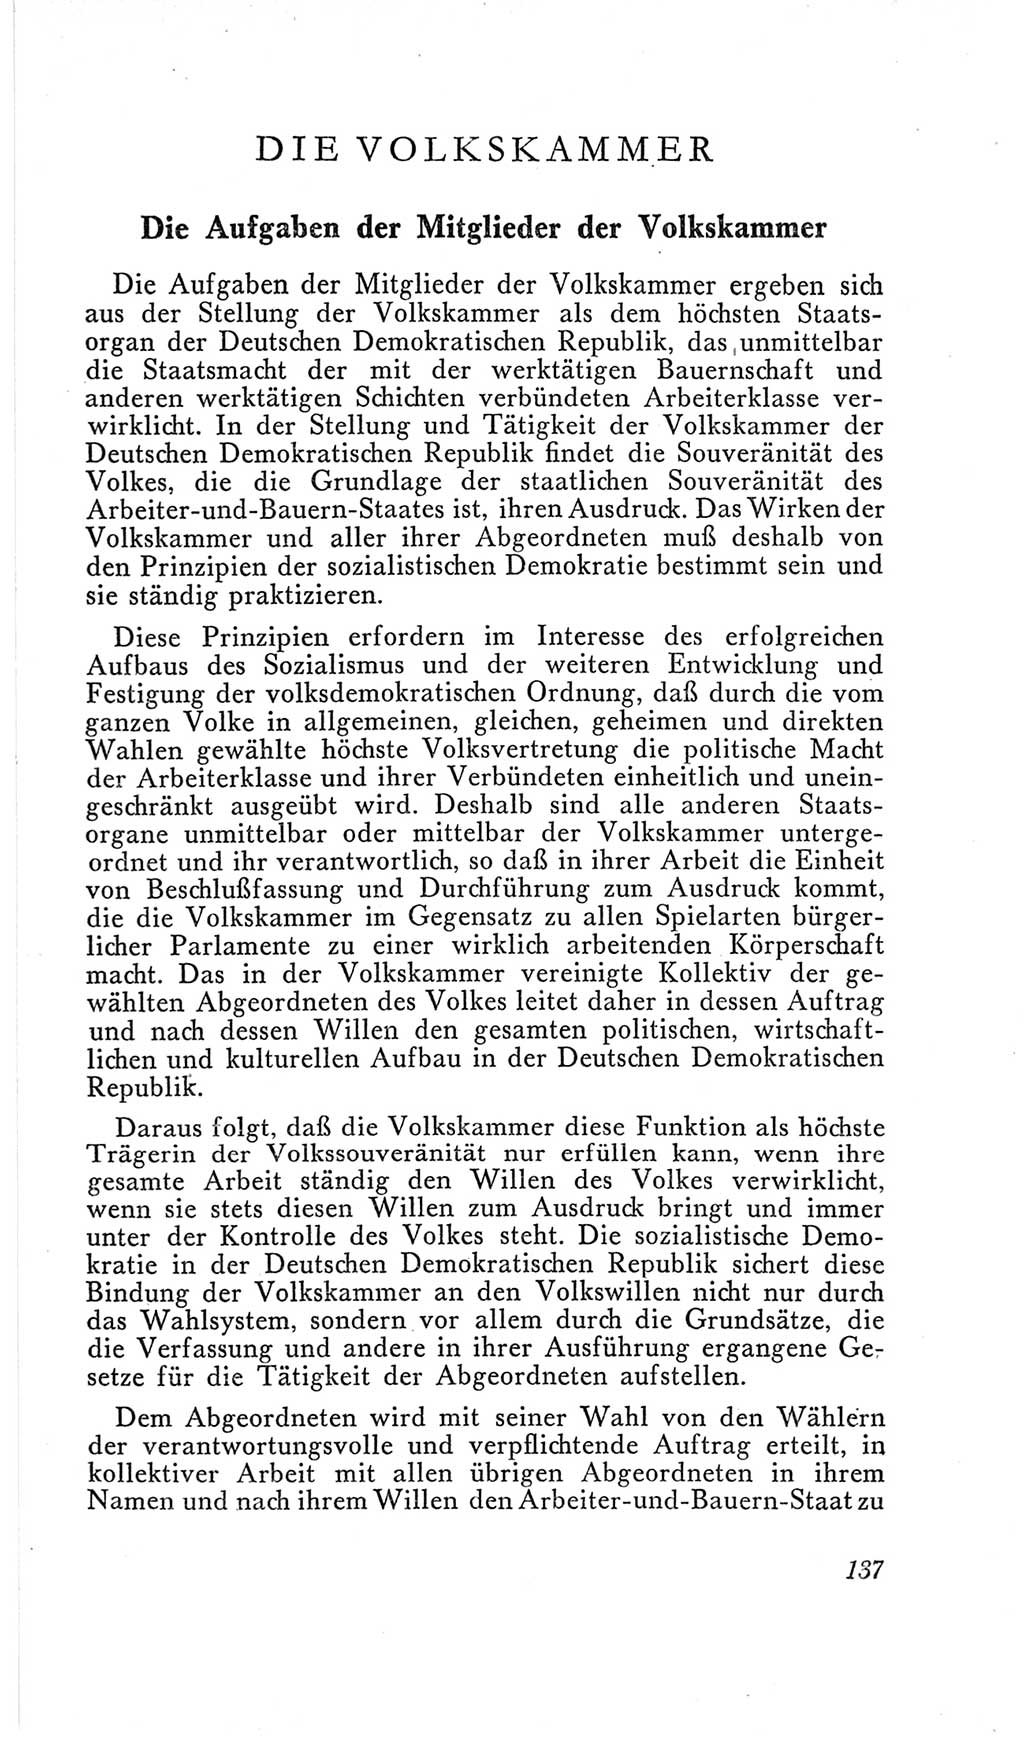 Handbuch der Volkskammer (VK) der Deutschen Demokratischen Republik (DDR), 2. Wahlperiode 1954-1958, Seite 137 (Hdb. VK. DDR, 2. WP. 1954-1958, S. 137)